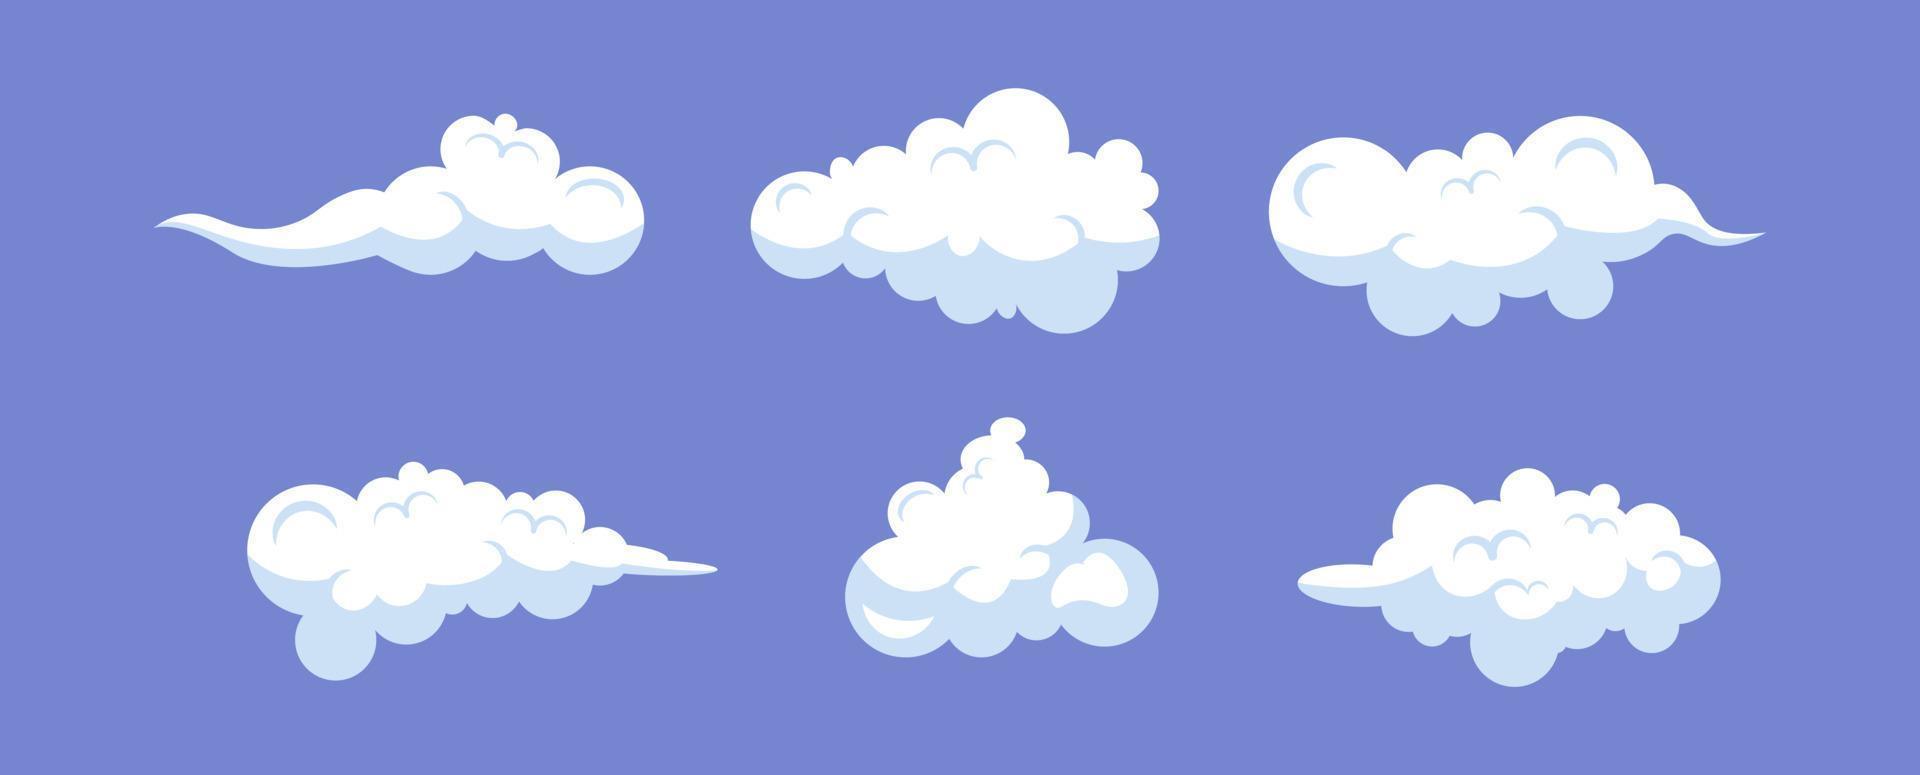 Cartoon-Wolken-Illustrationen eingestellt. Sammlung flacher Wolken. vektor